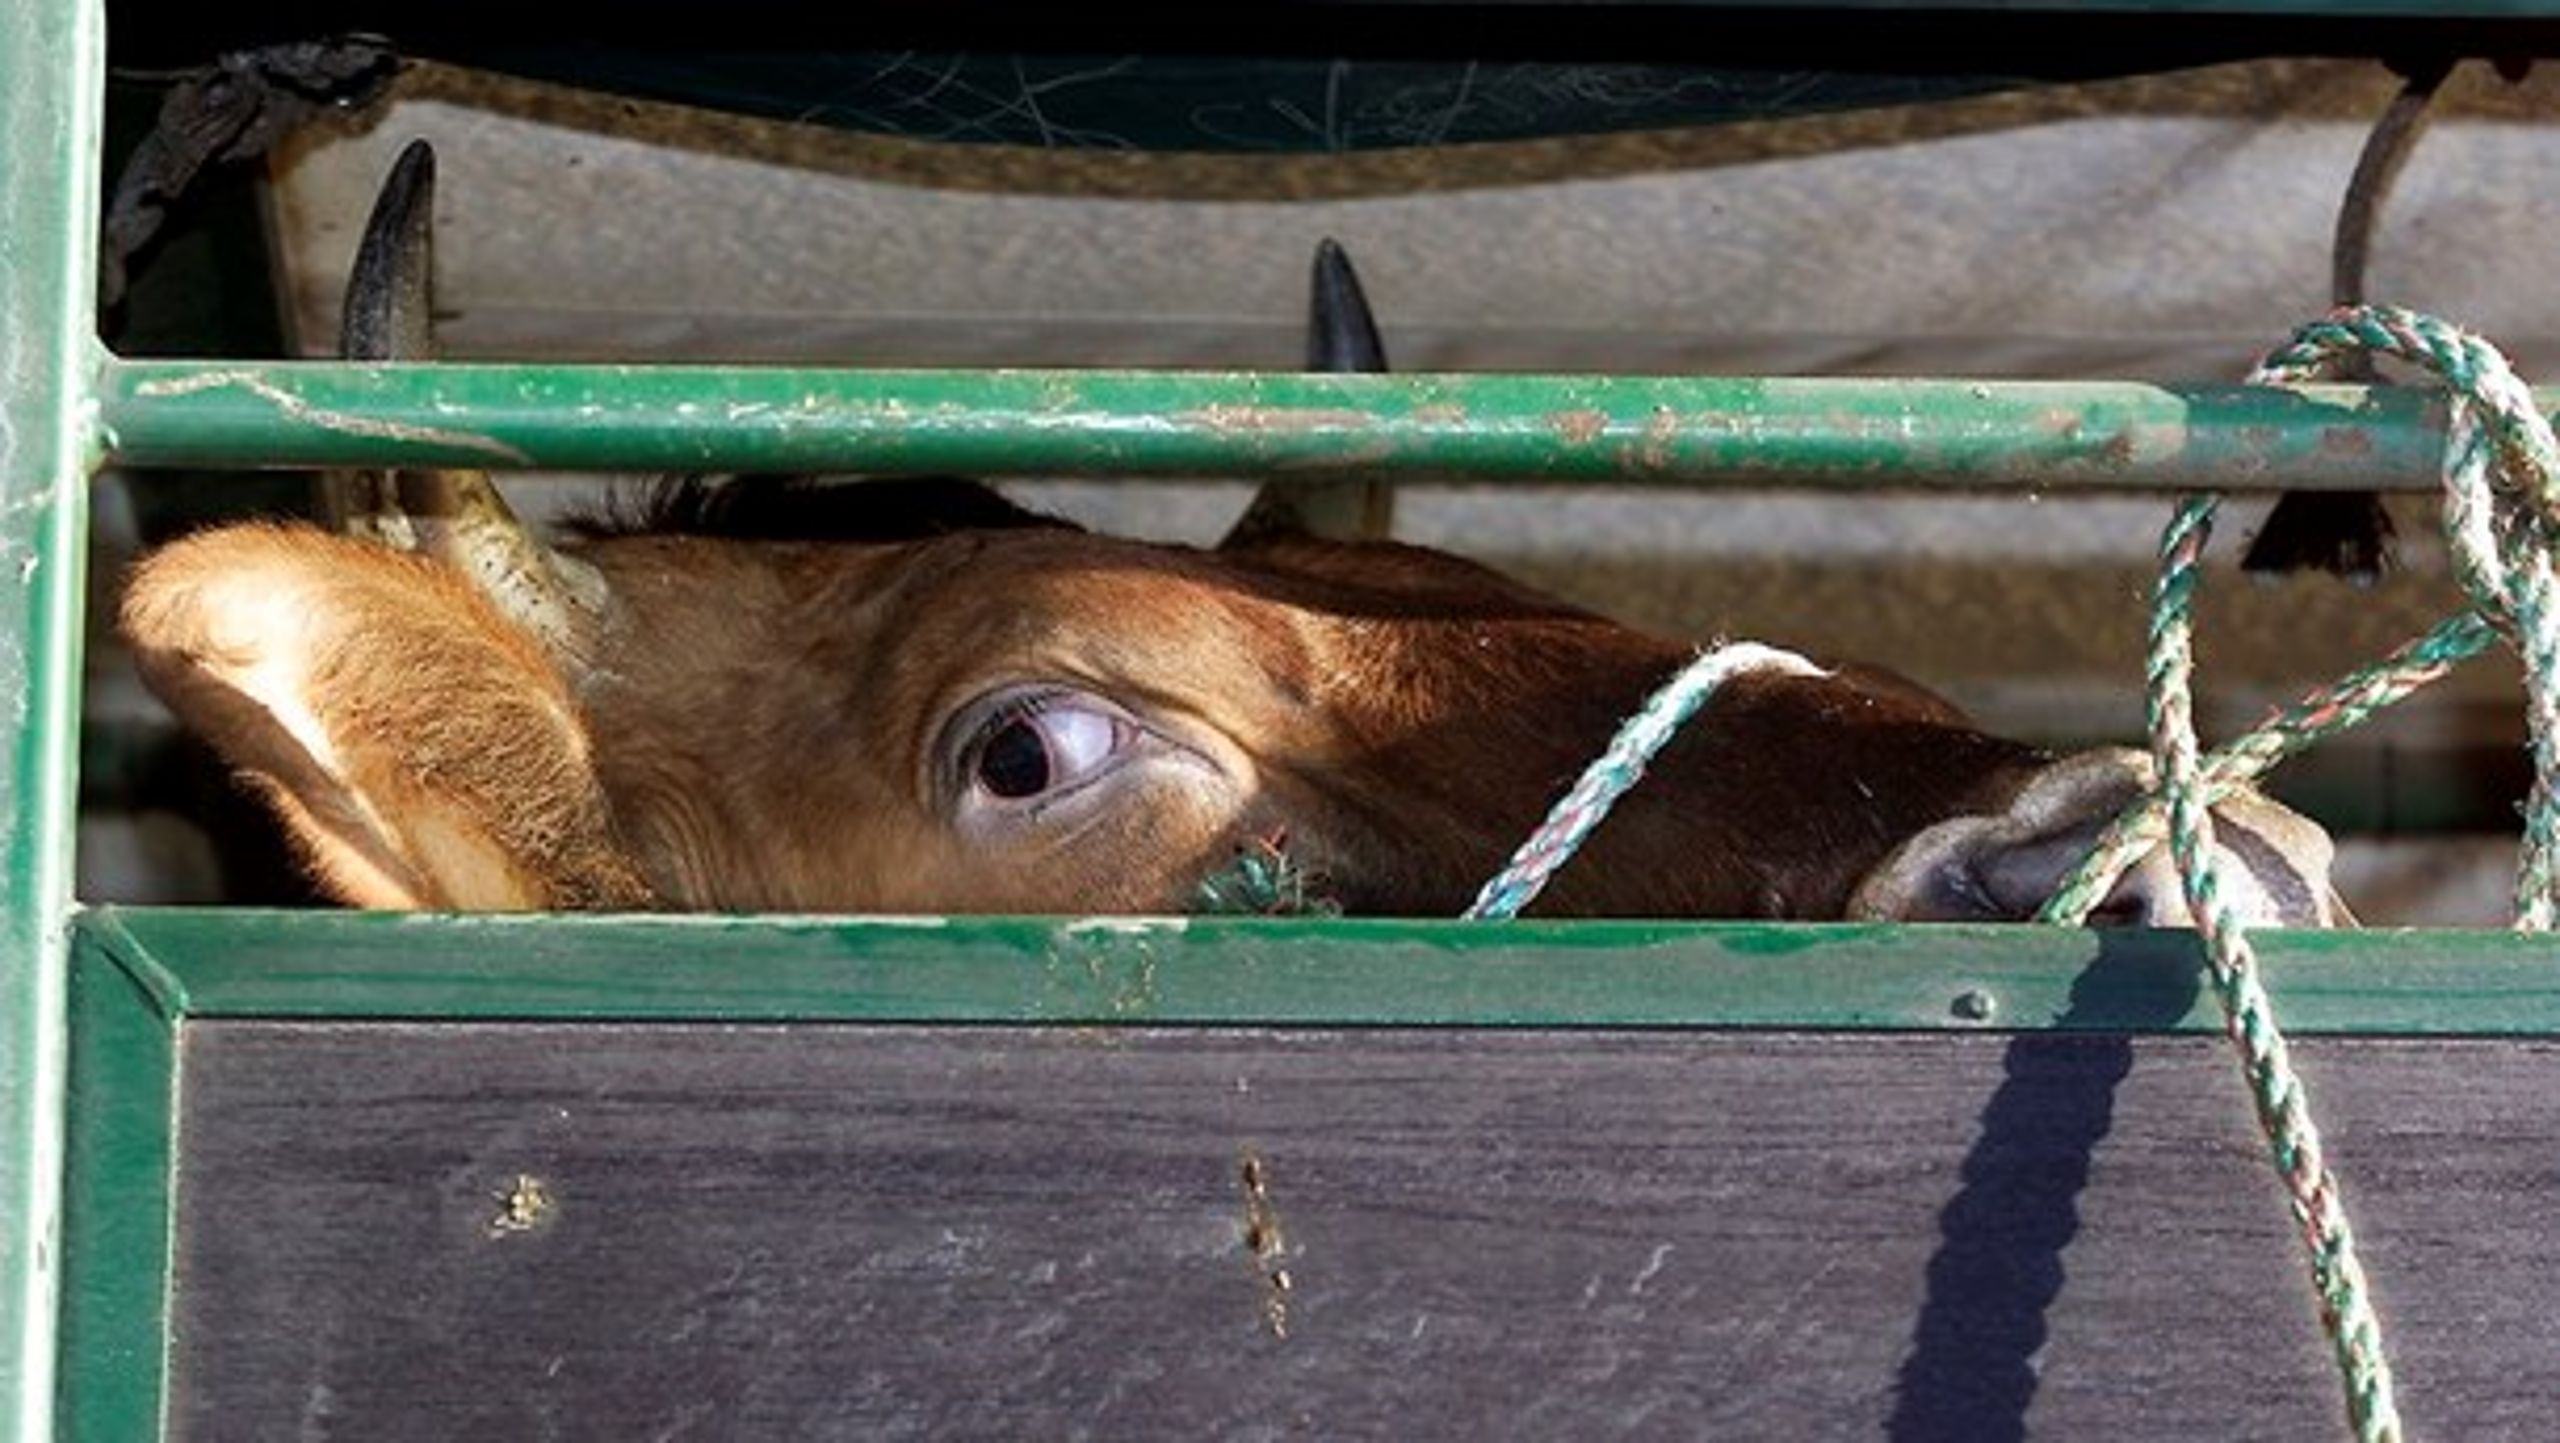 Dyr transporteres ofte under dårlige forhold.&nbsp;Under transporterne er det flere gange&nbsp;dokumenteret, hvordan dyrene ikke har adgang til hverken drikke eller foder.